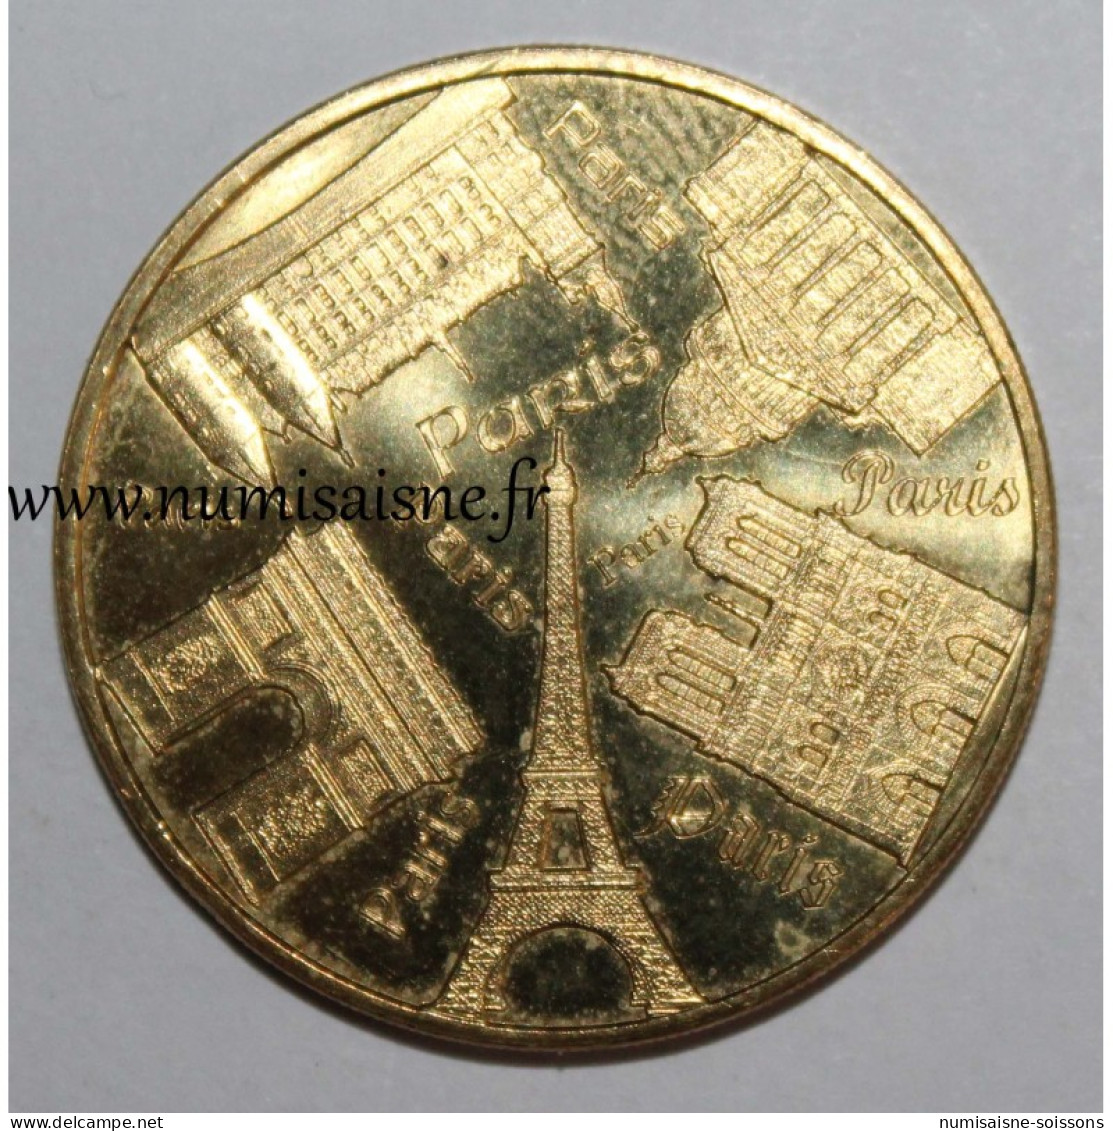 75 - PARIS - CENTRE DES MONUMENTS NATIONAUX - Monnaie De Paris - 2017 - Ohne Datum